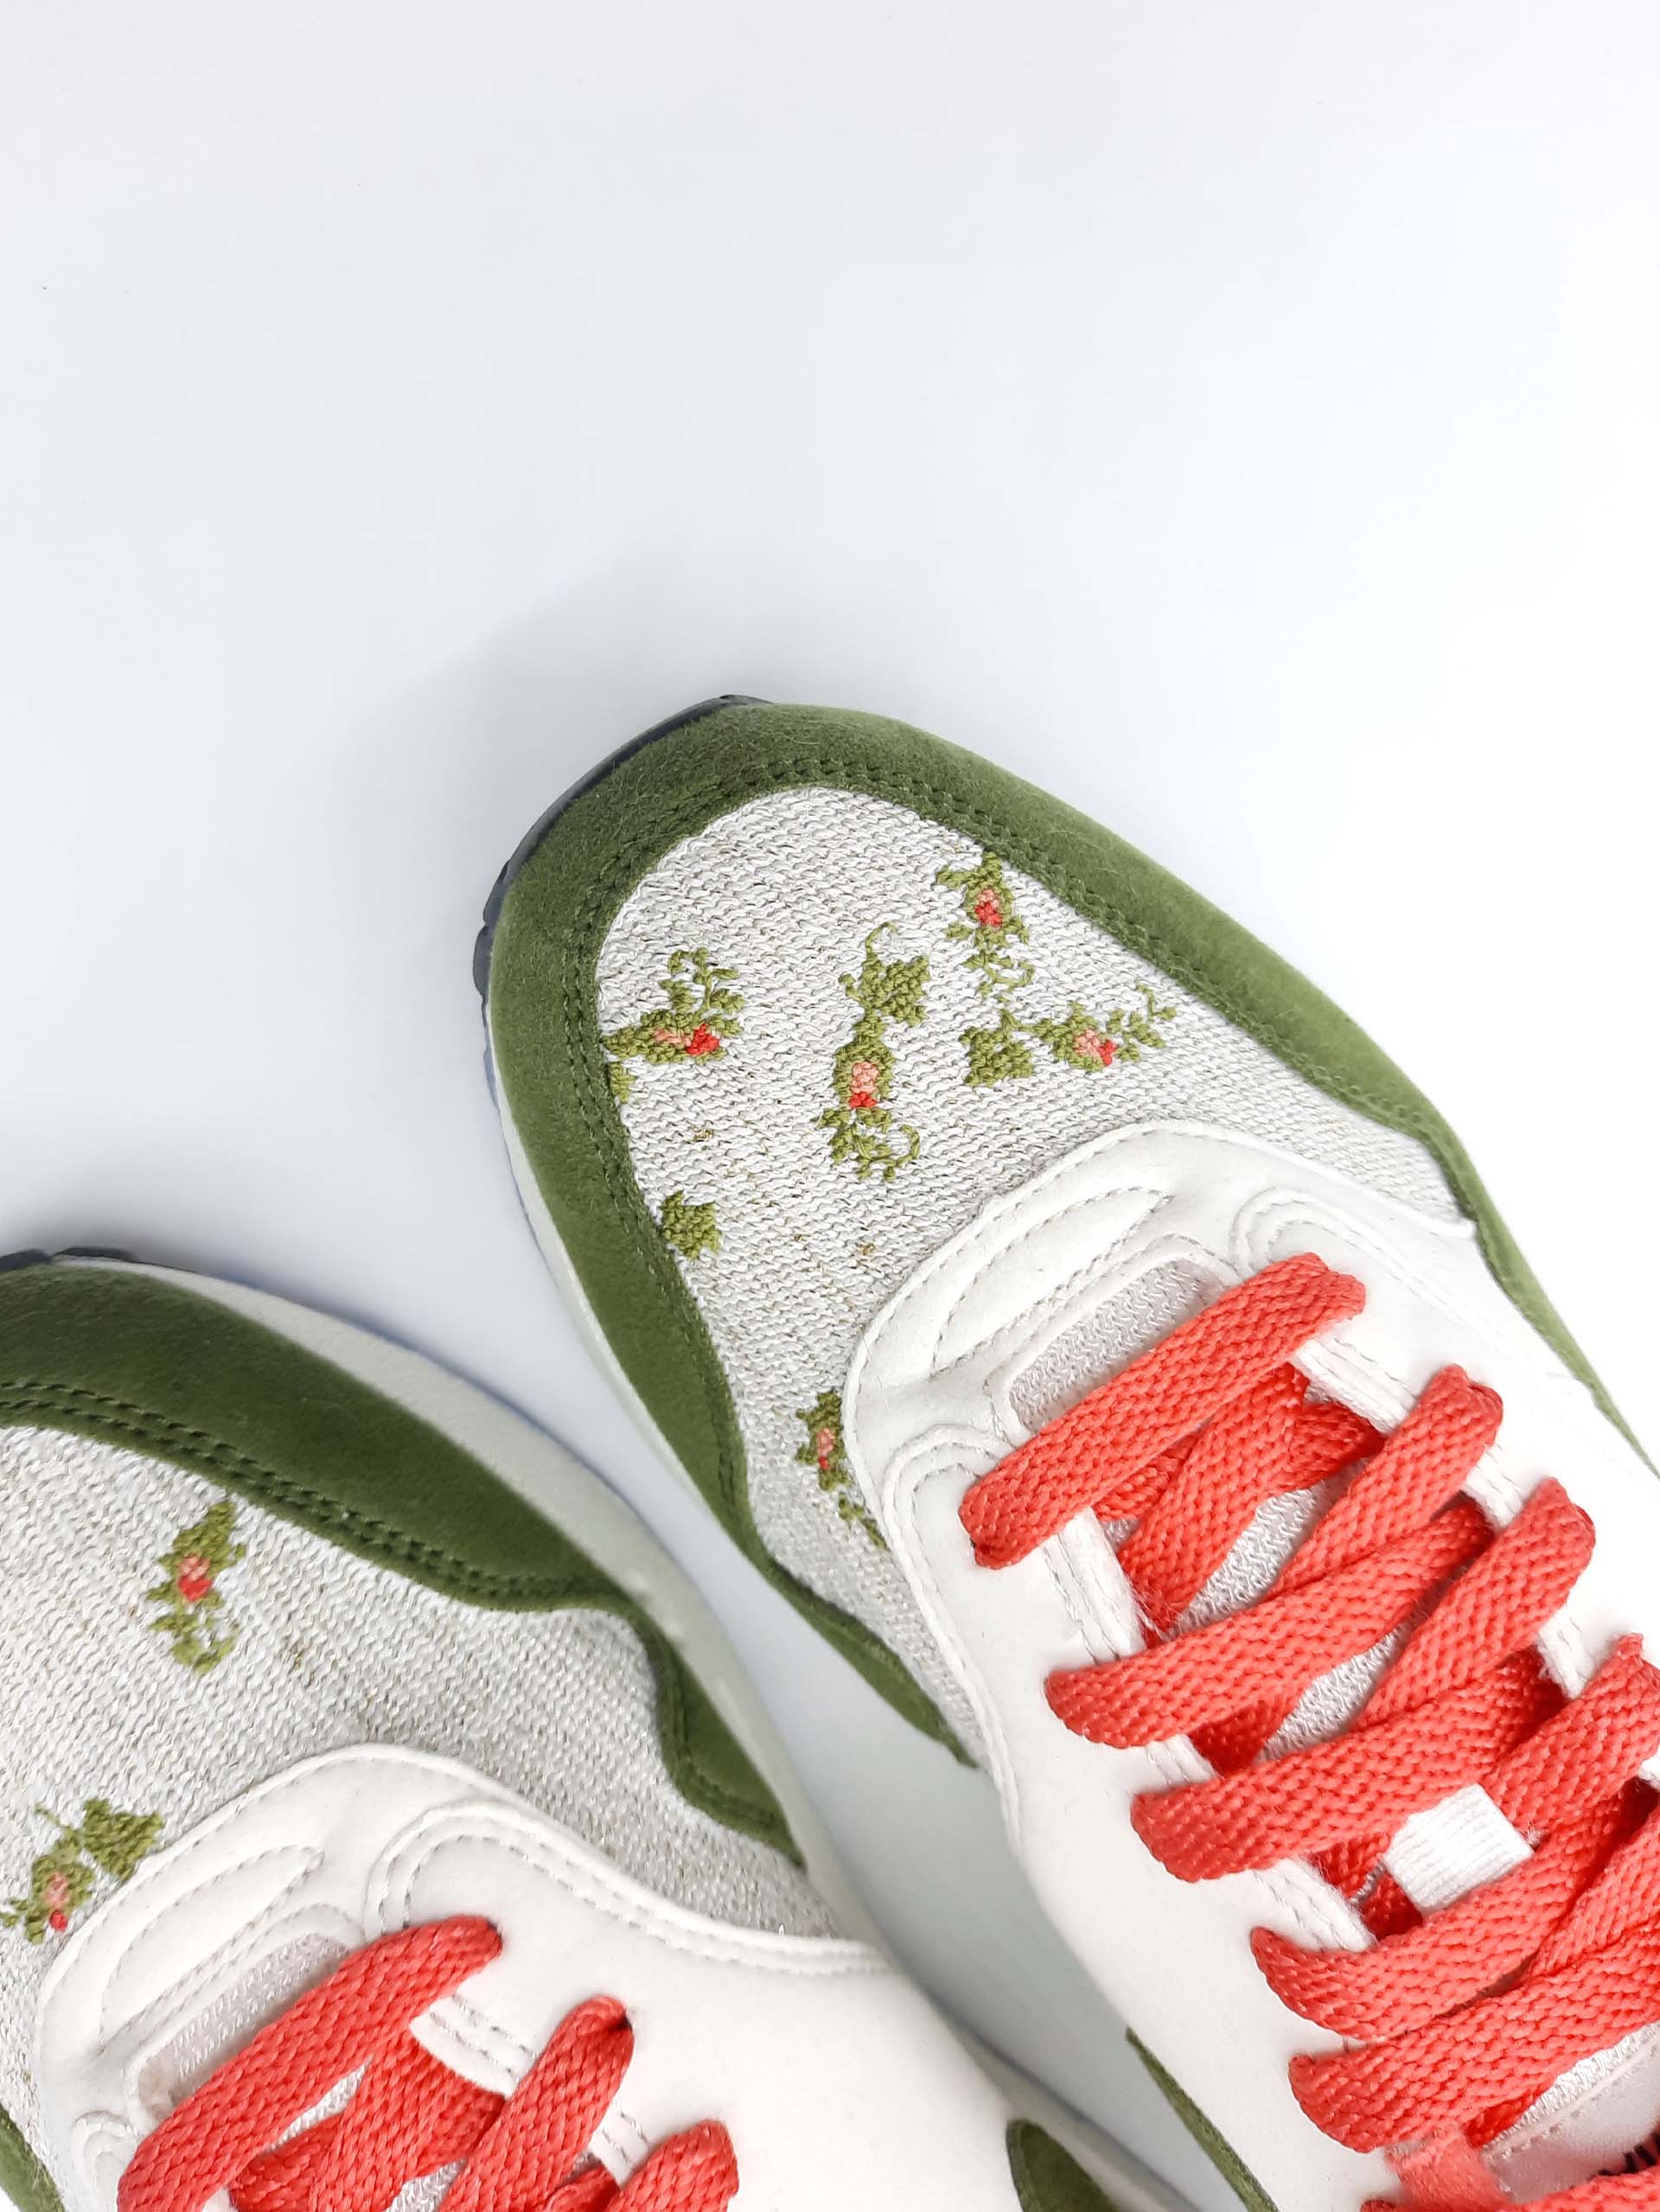 Broderie fleurs sur sneakers Nike Air Max 1 vertes et roses - Modèle d'exception